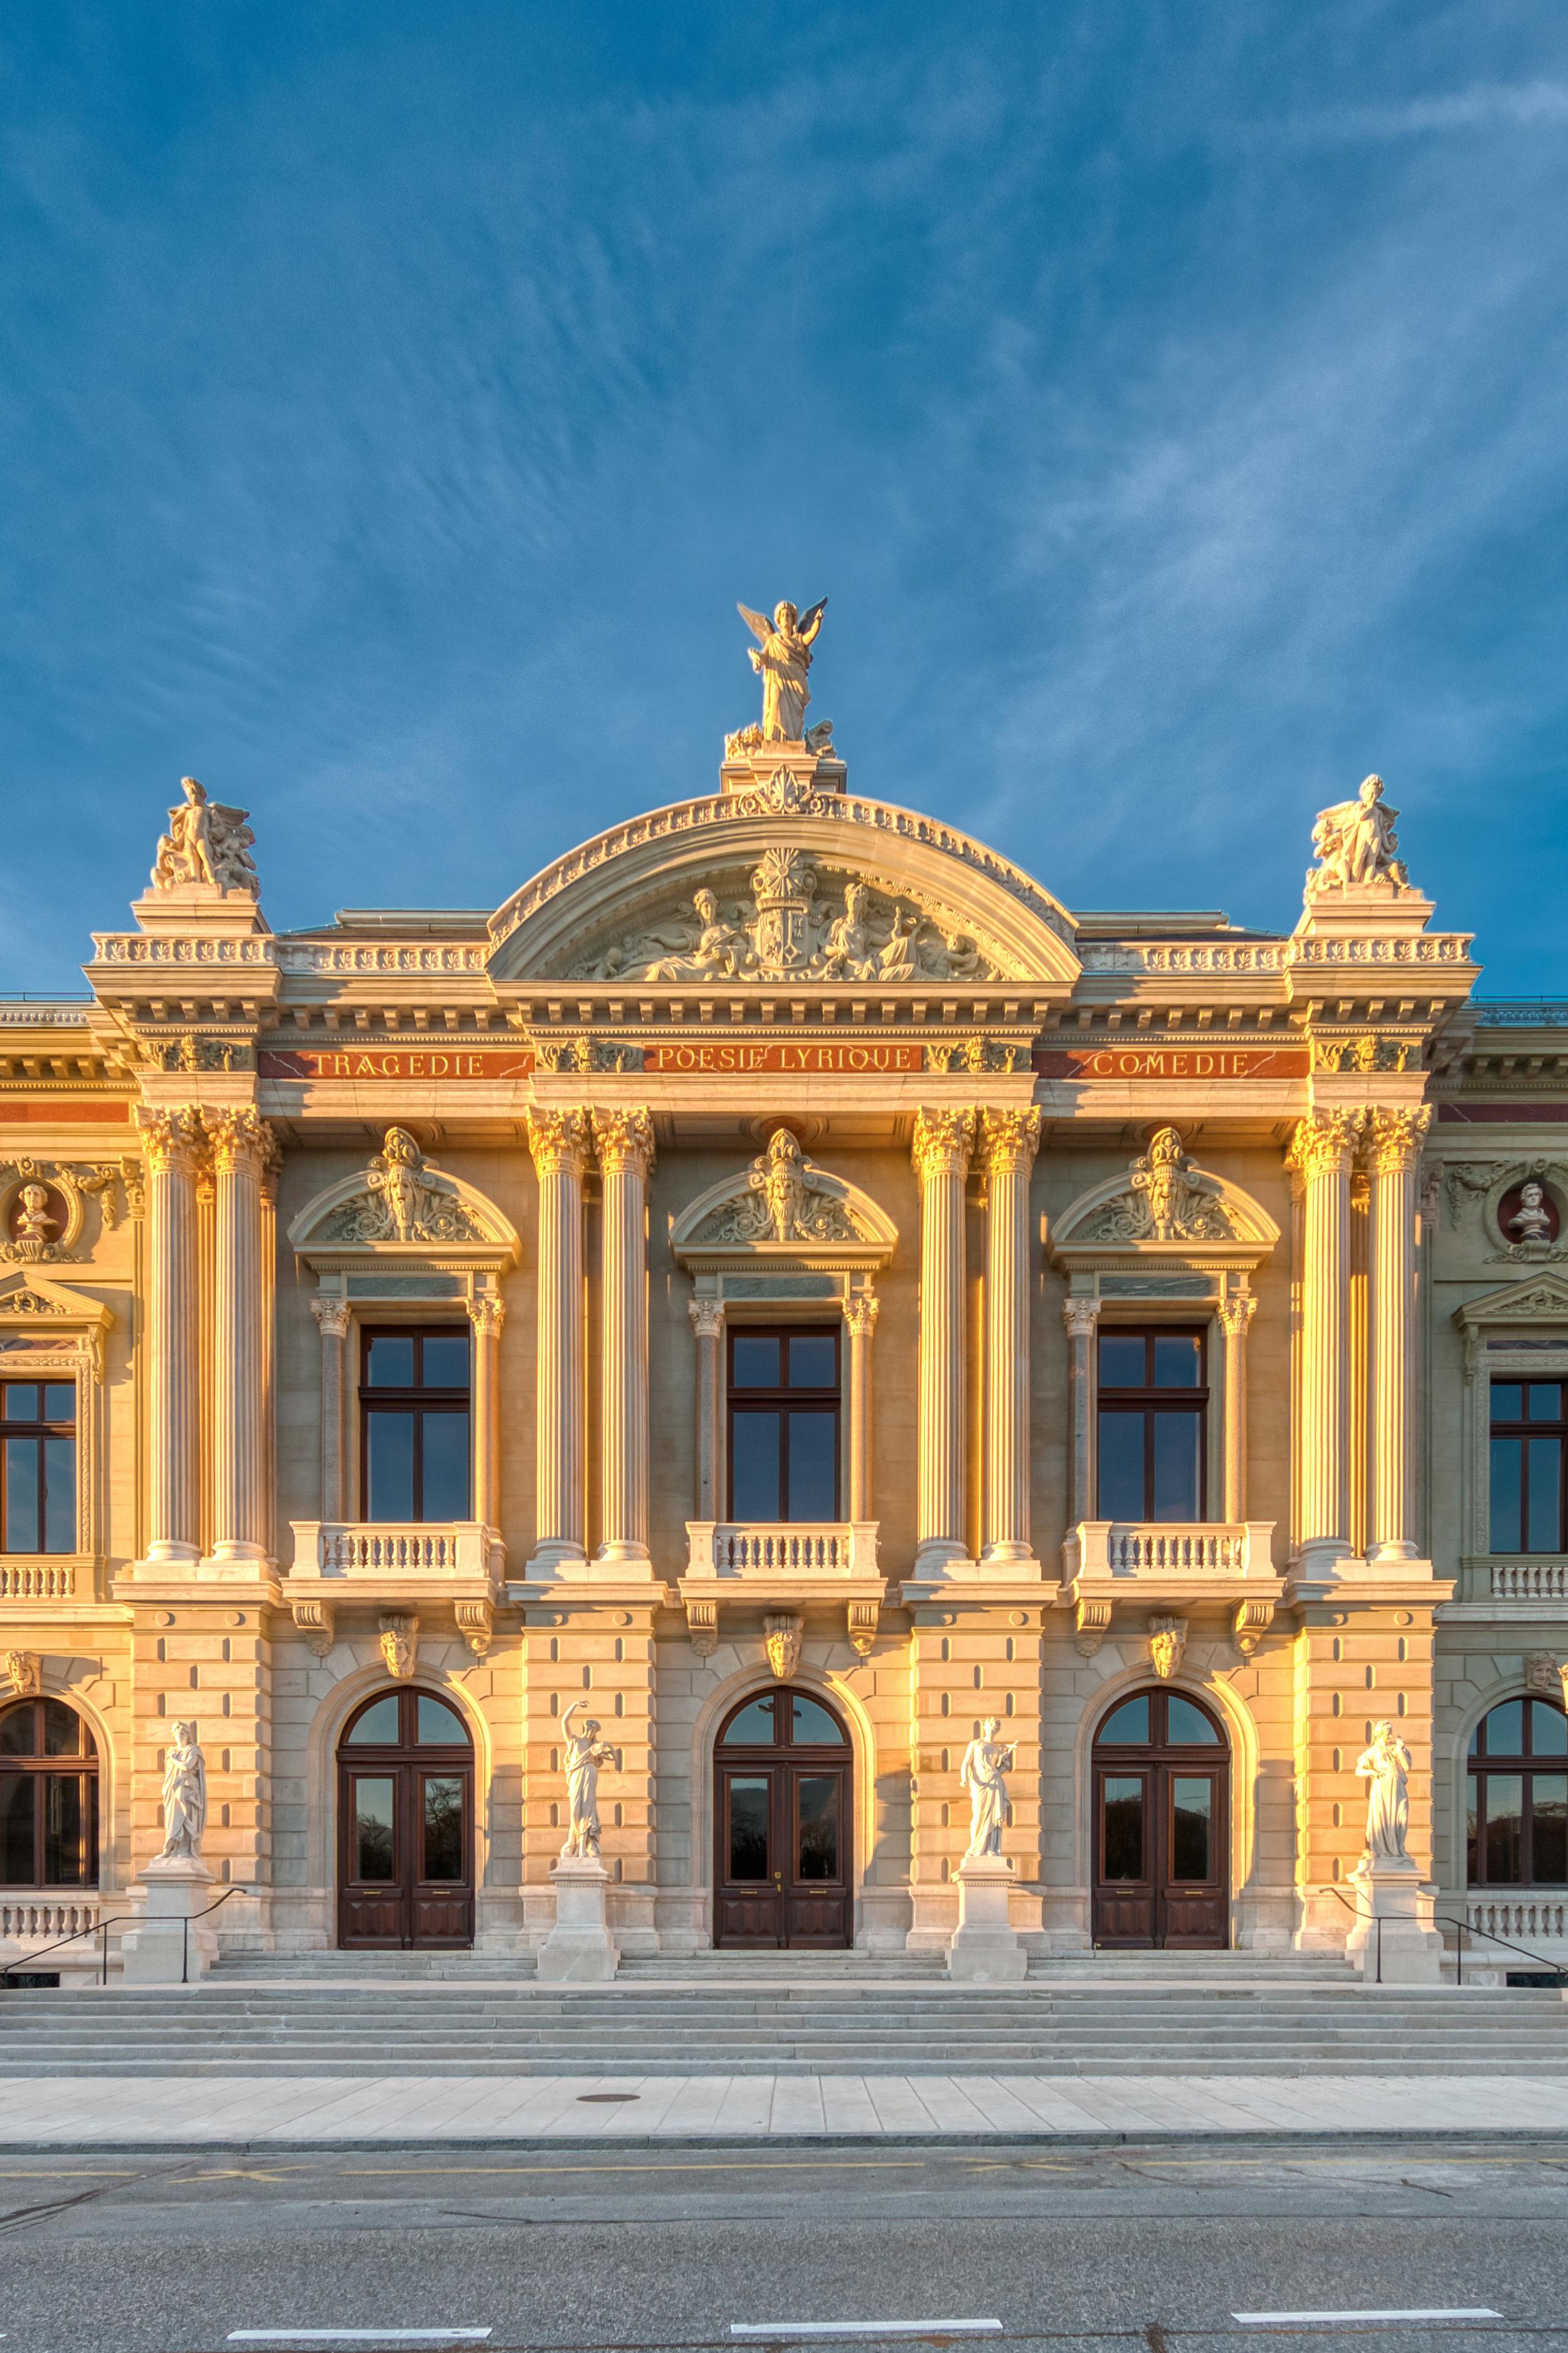 Façade of the Grand Théâtre de Genève